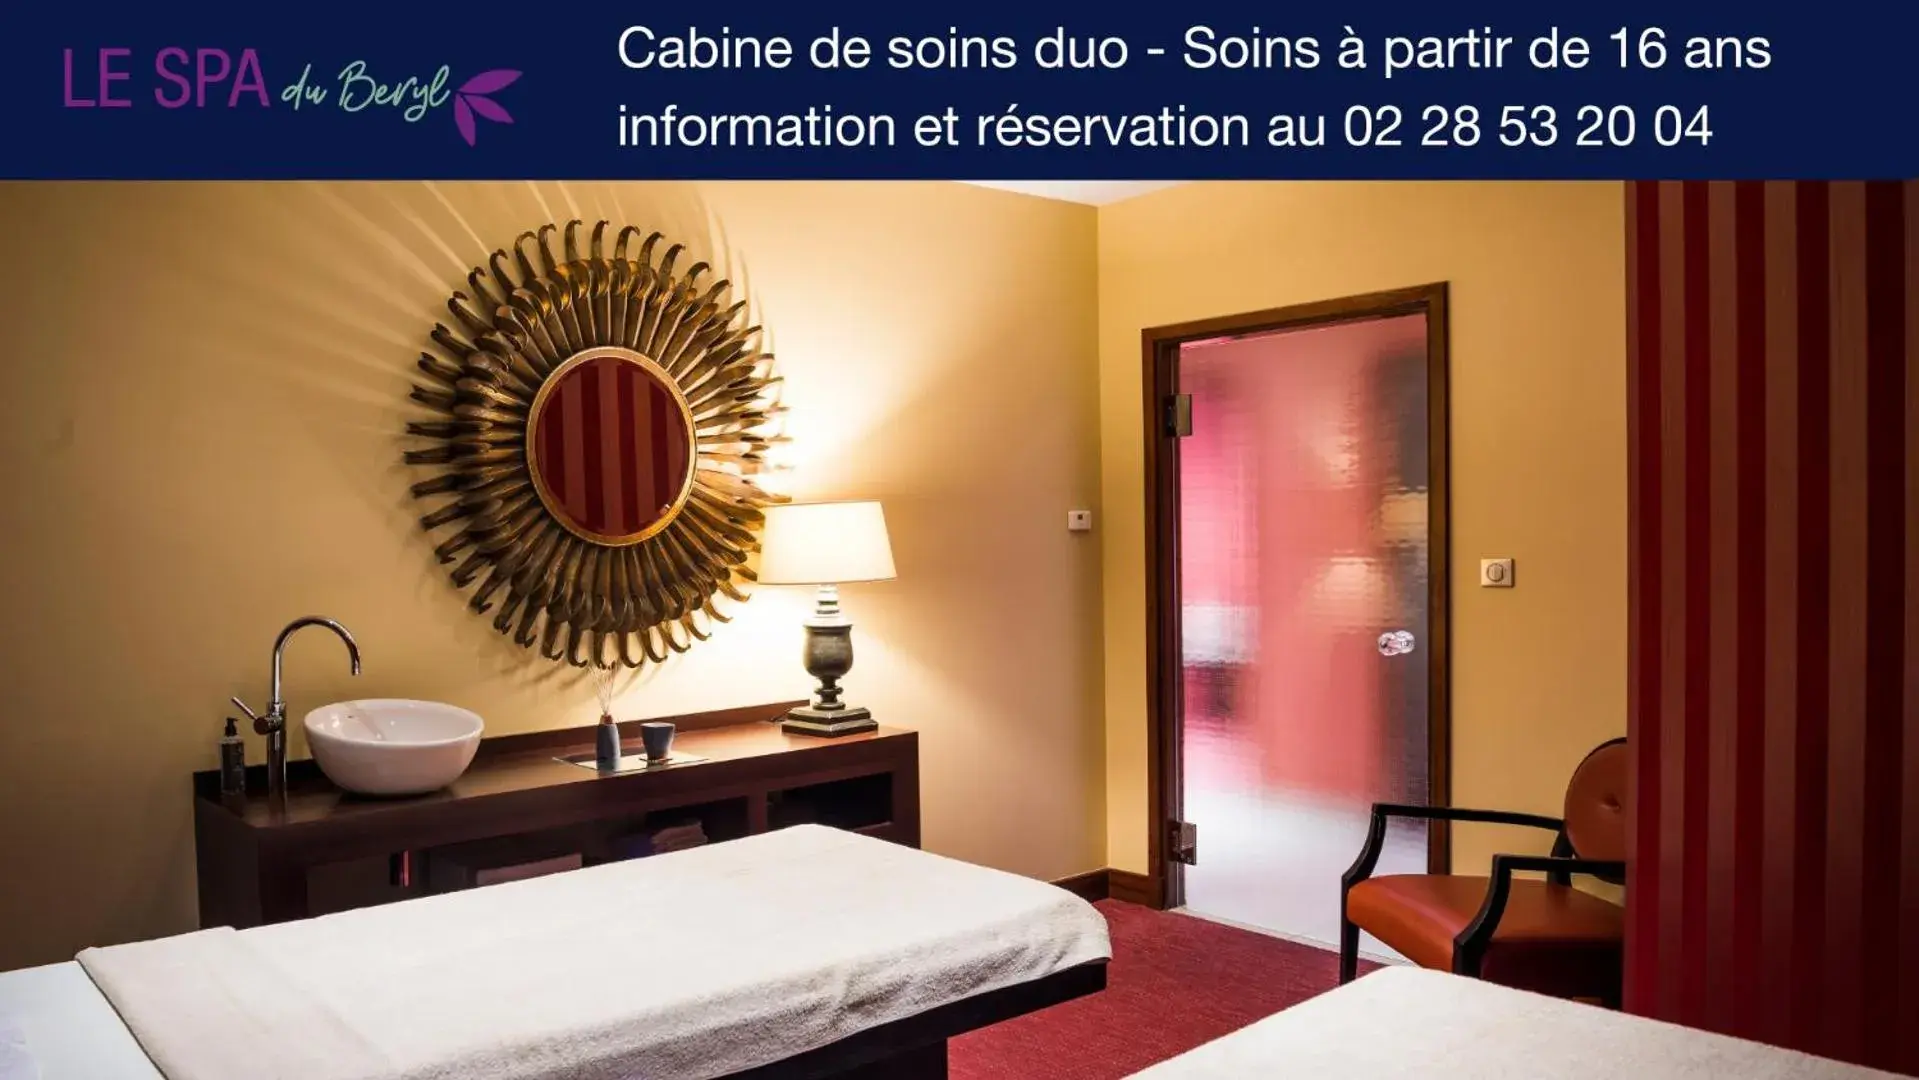 Massage in Hôtel Spa du Beryl